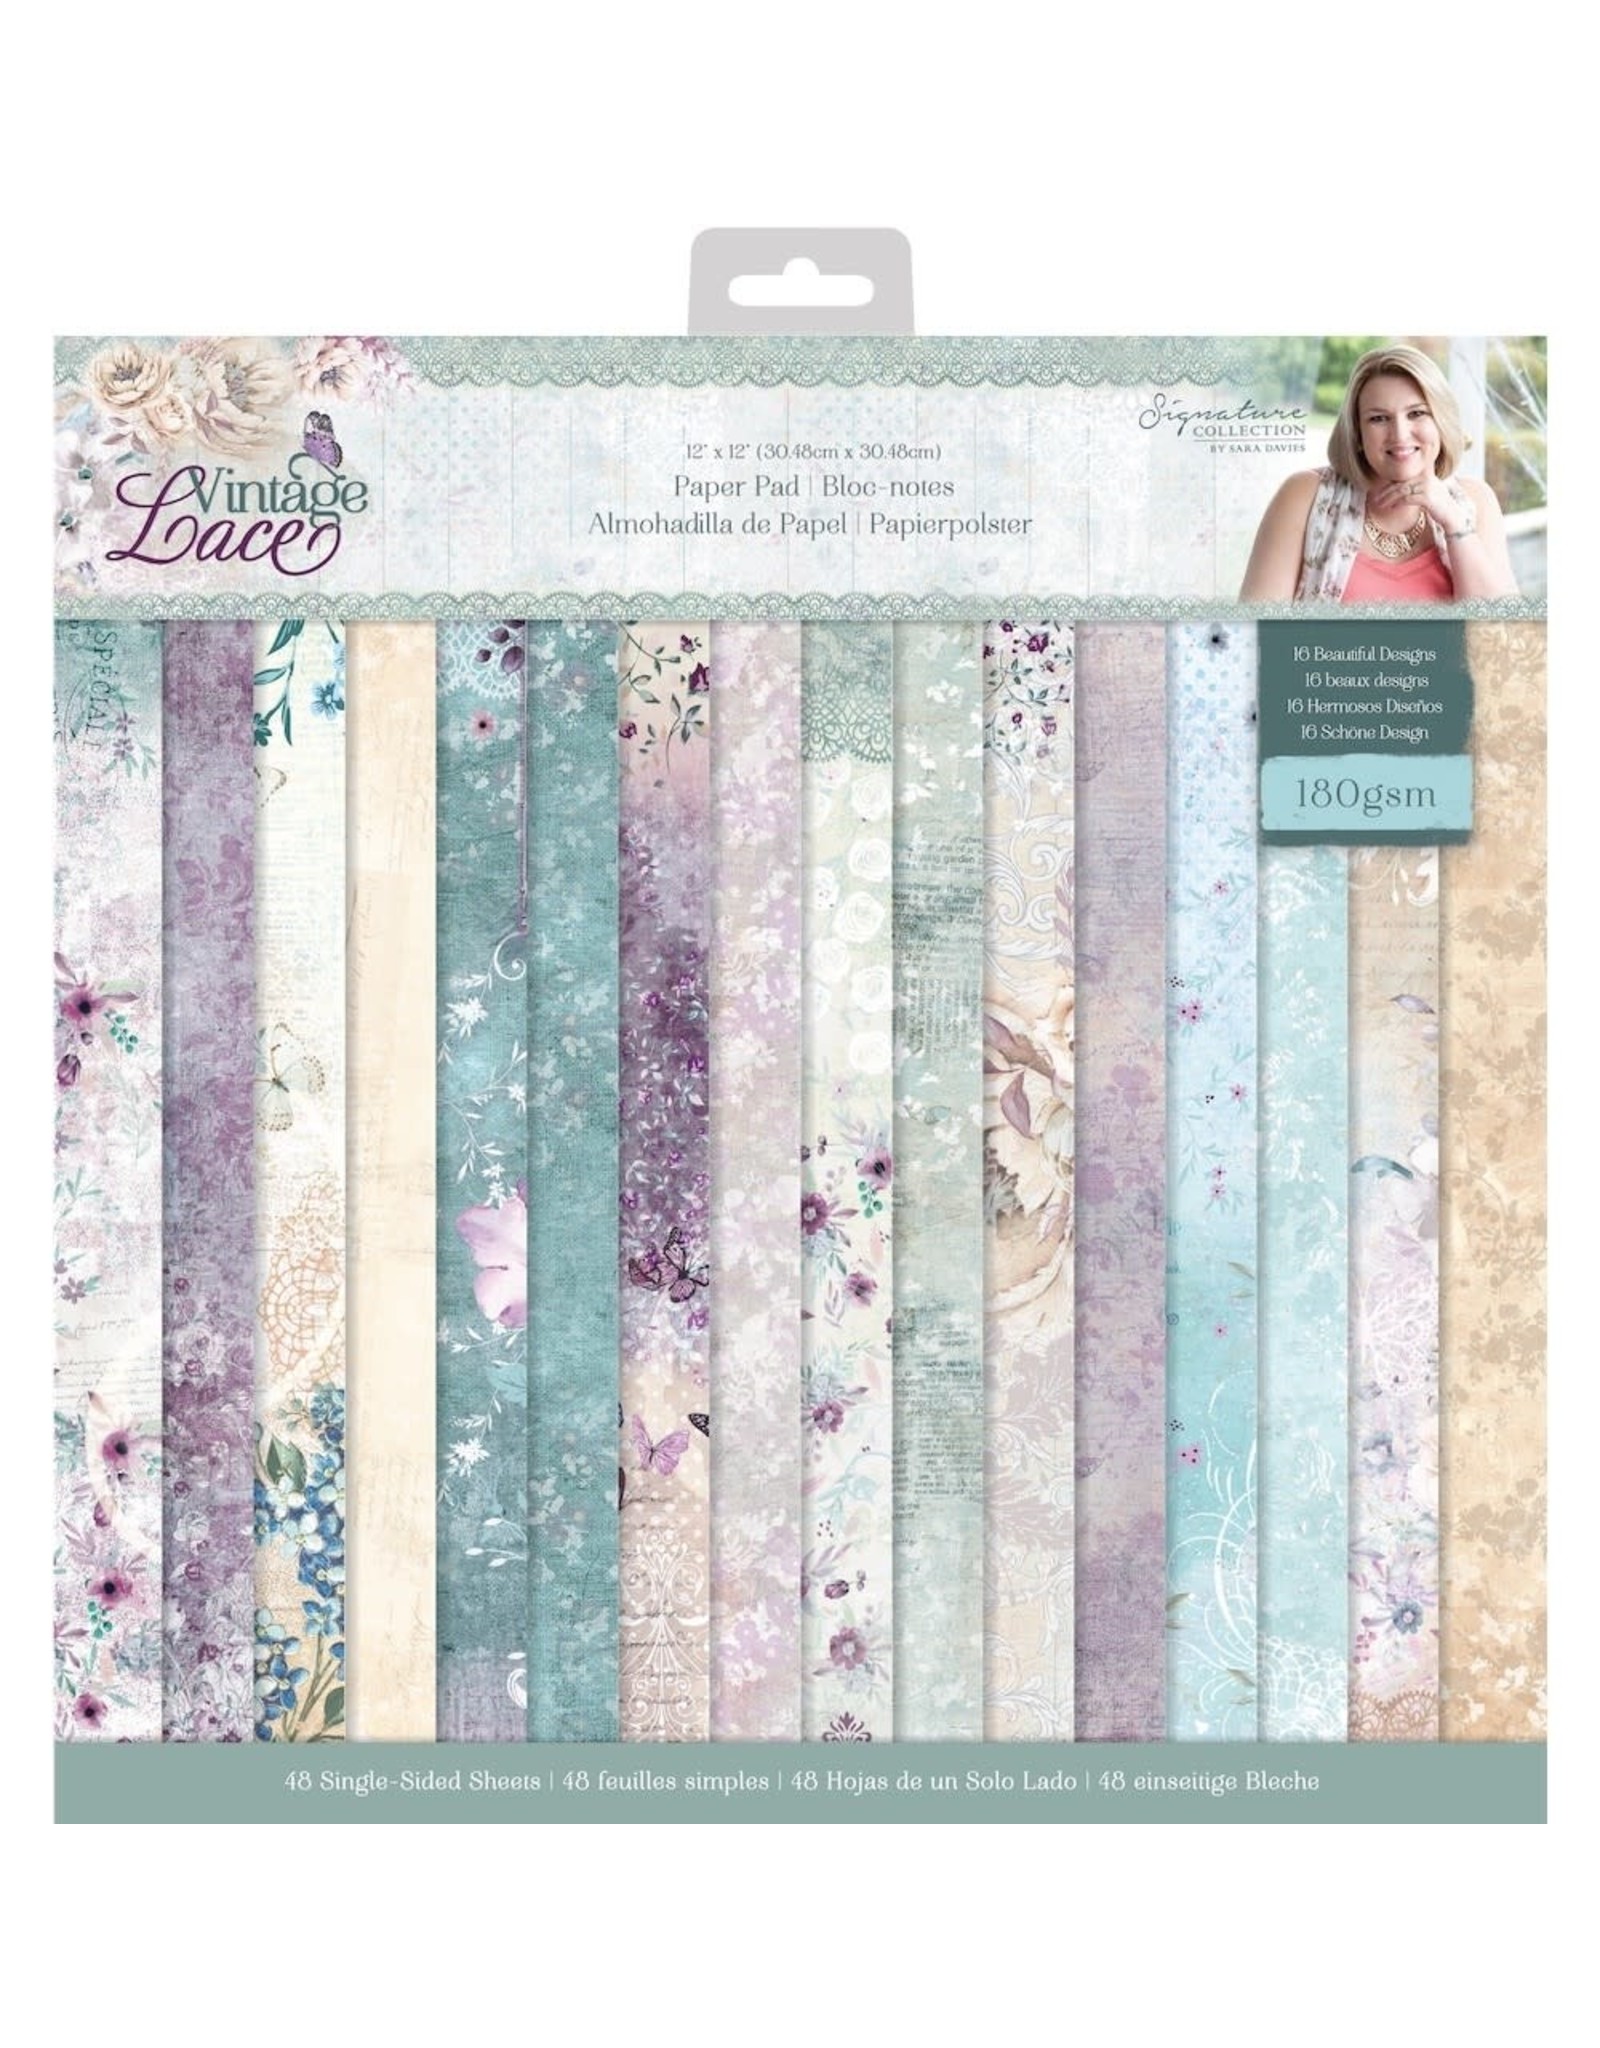 Jewel Glitter 12x12 paper pad